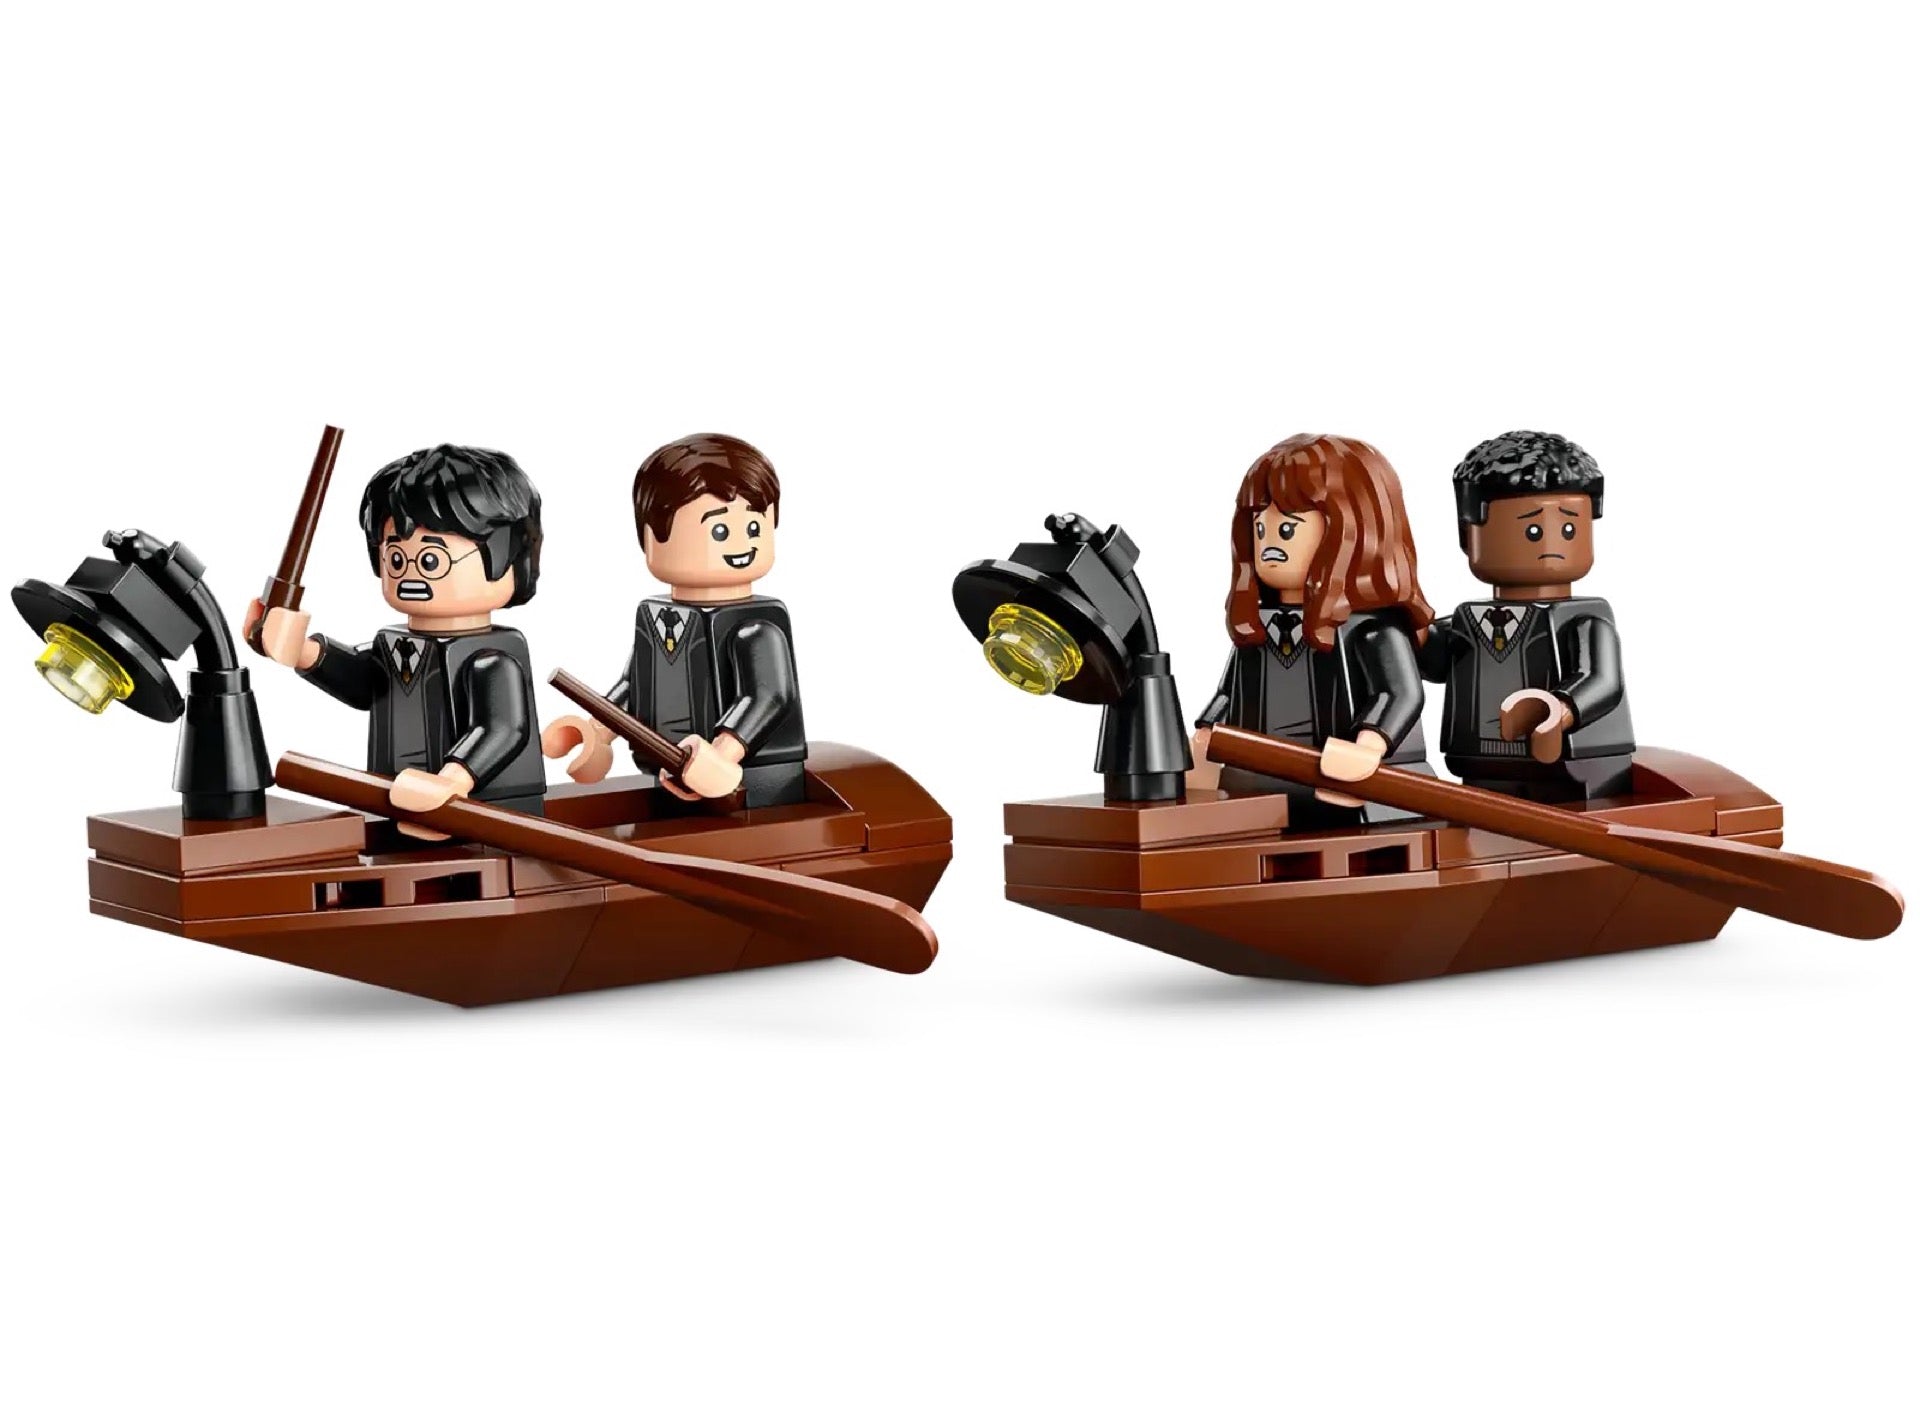 76426 LEGO Harry Potter La rimessa per le barche del Castello di Hogwarts